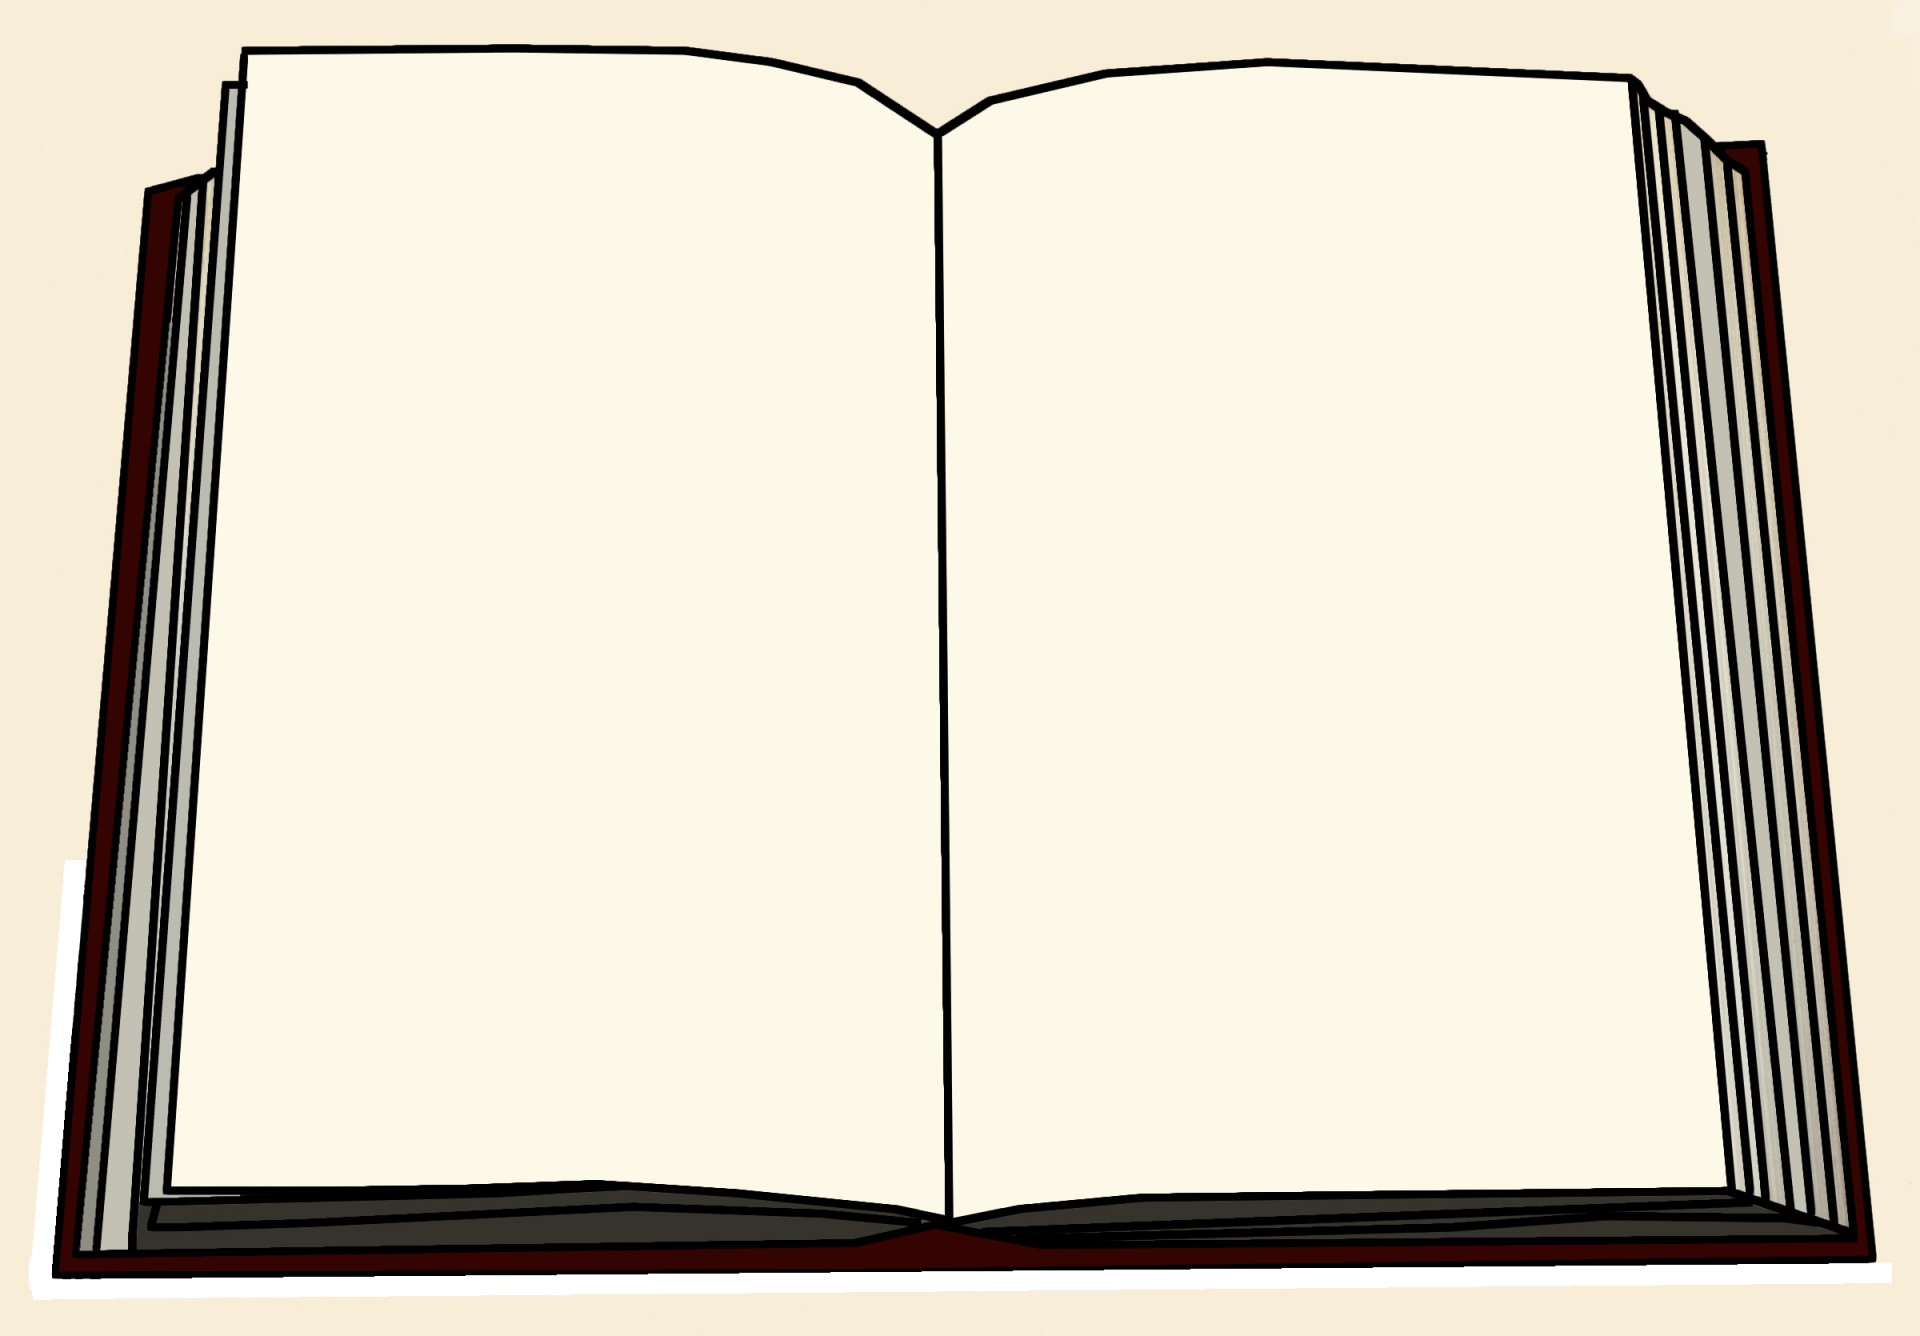 blank-book-cover-template-blank-book-cover-template-pdf